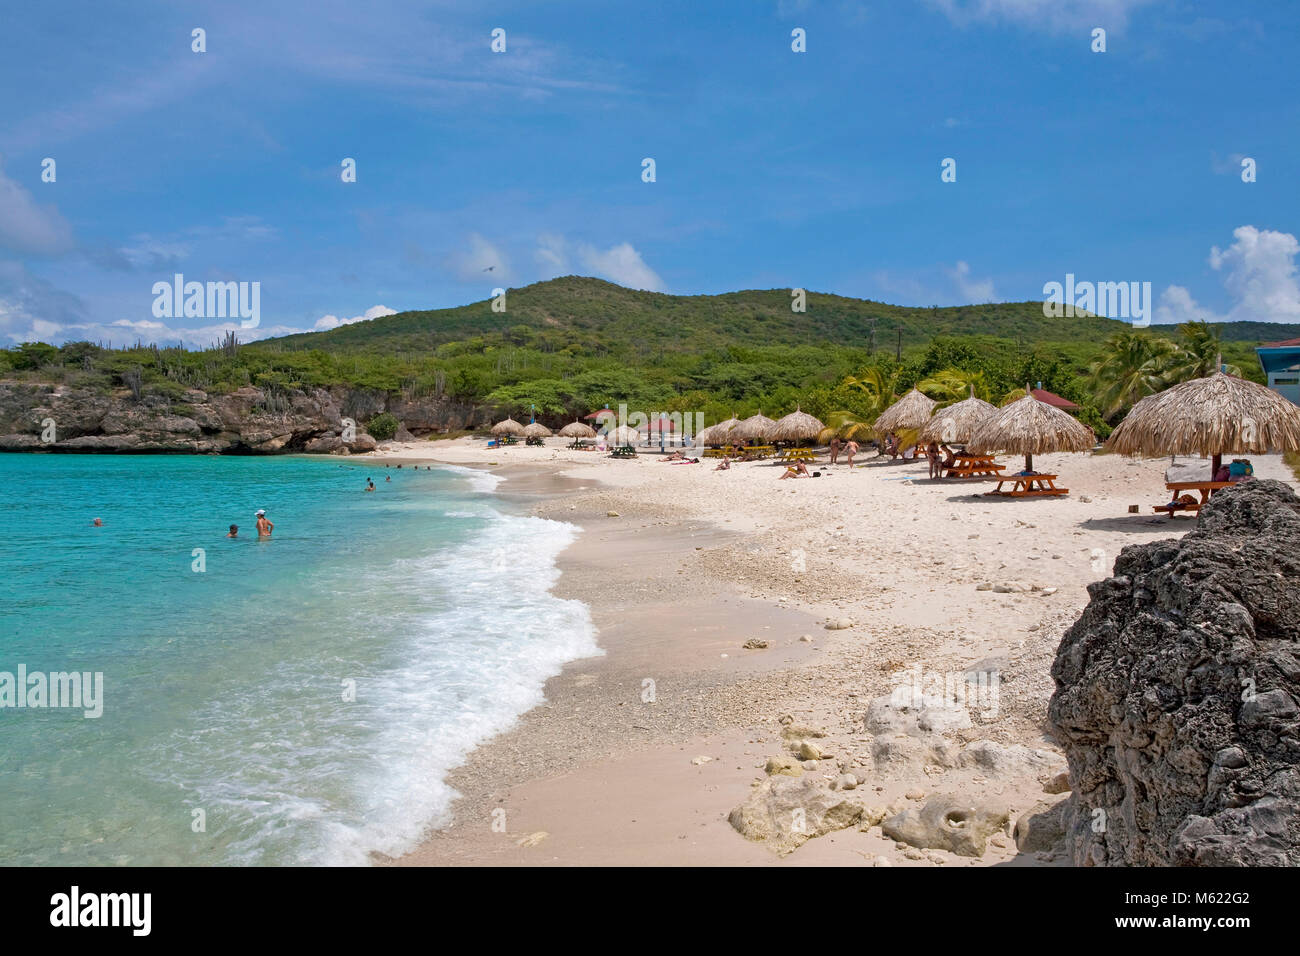 Los turistas en la playa popular 'Grote Knip', Curazao, Antillas Neerlandesas, Caribe, Mar Caribe Foto de stock